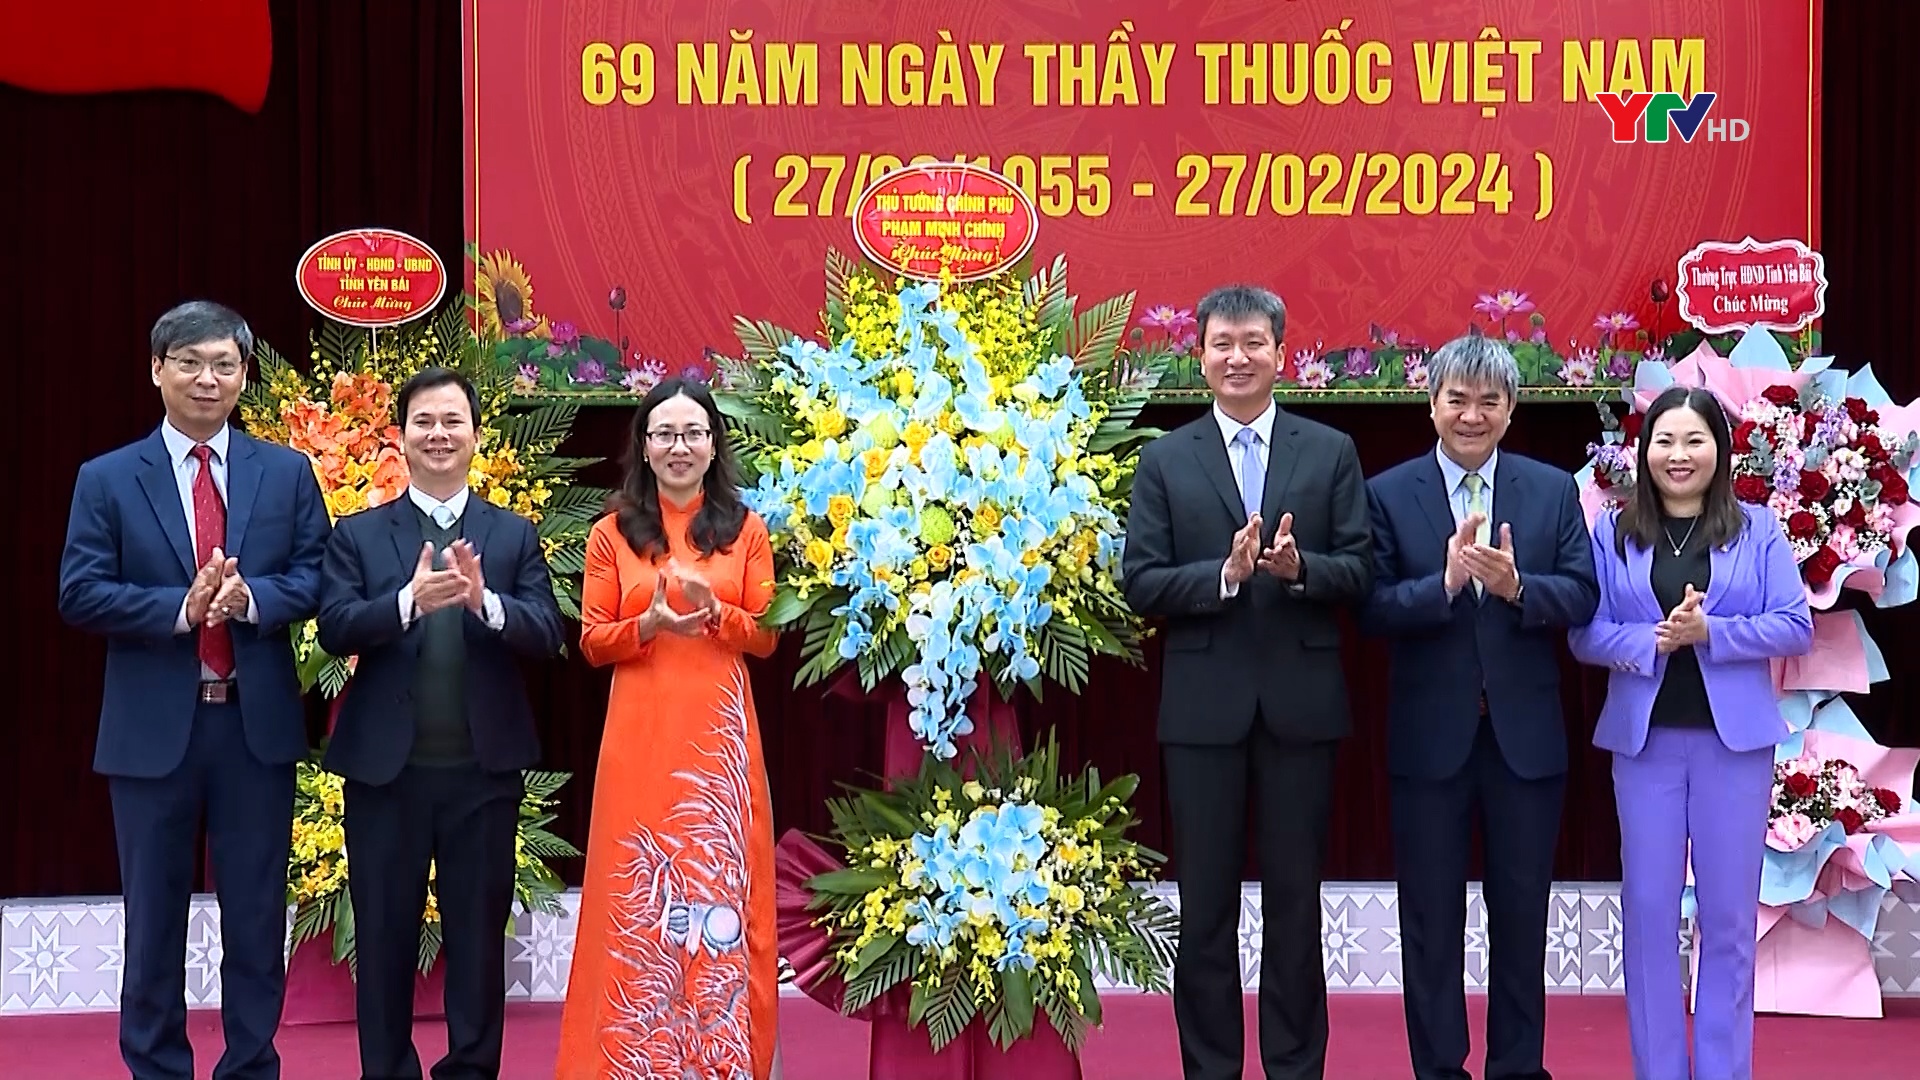 Đồng chí Chủ tịch UBND tỉnh Trần Huy Tuấn chúc mừng ngành Y tế nhân Ngày Thầy thuốc Việt Nam